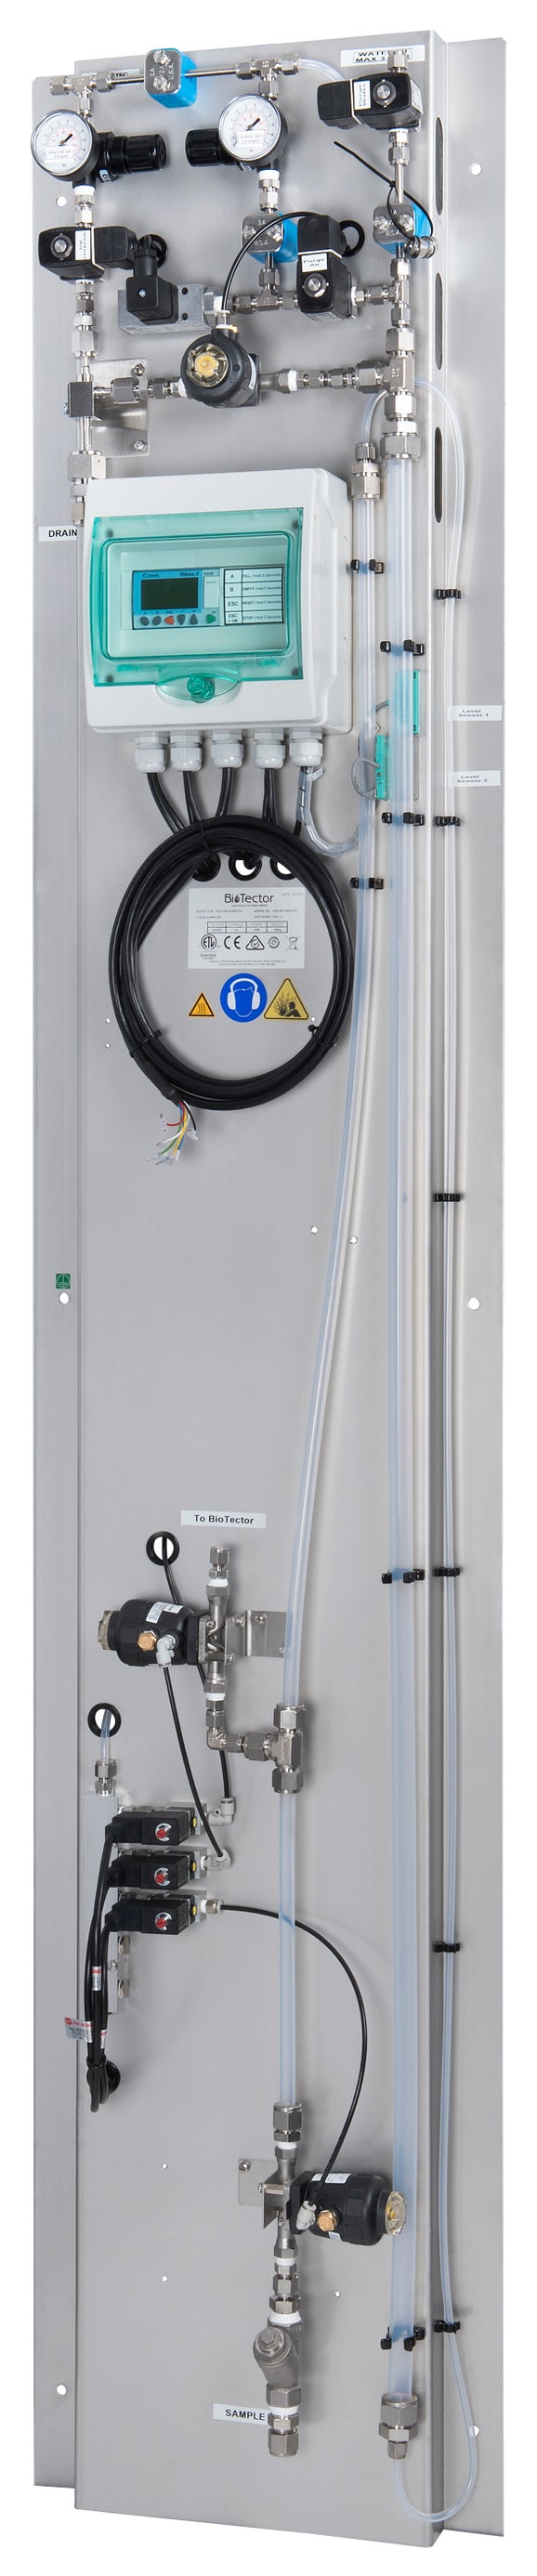 เครื่องเก็บตัวอย่างพร้อมอากาศและชำระล้าง (สตรีมเดี่ยว), สำหรับ BioTector B7000/B7000i/B7000i Dairy